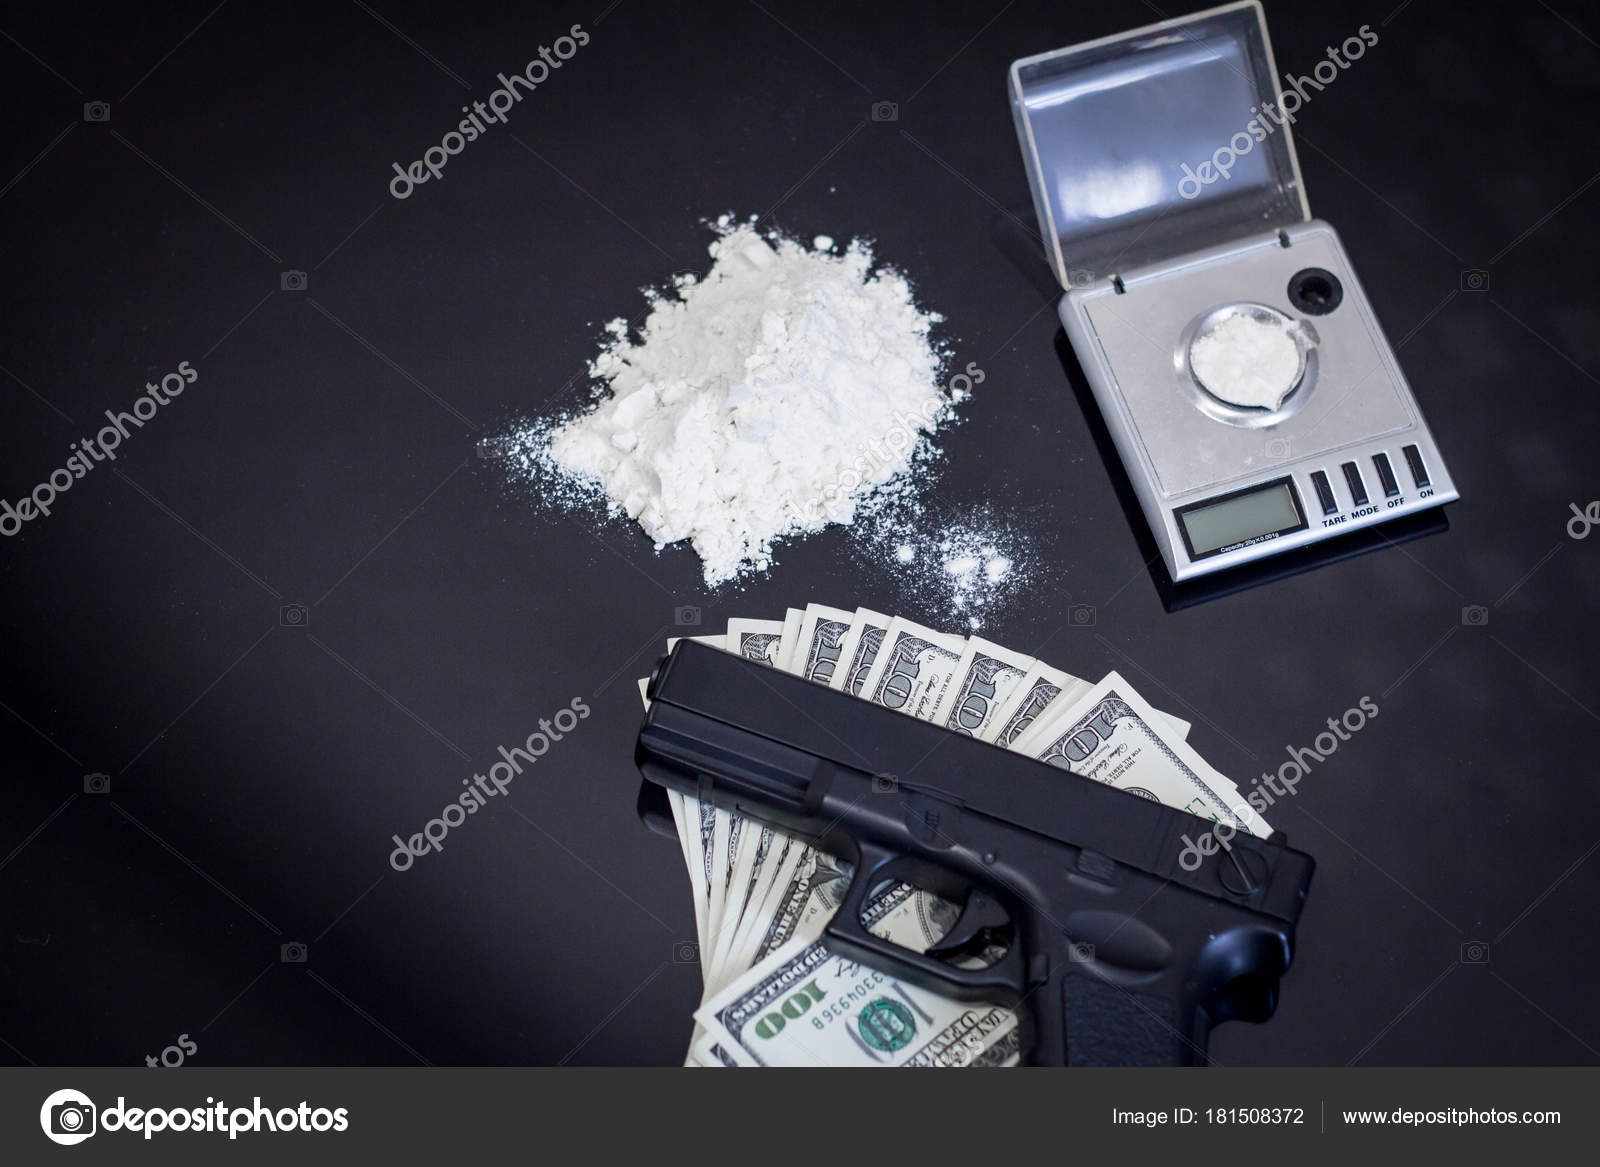 https://st3.depositphotos.com/8067450/18150/i/1600/depositphotos_181508372-stock-photo-criminal-concept-cocain-powder-black.jpg